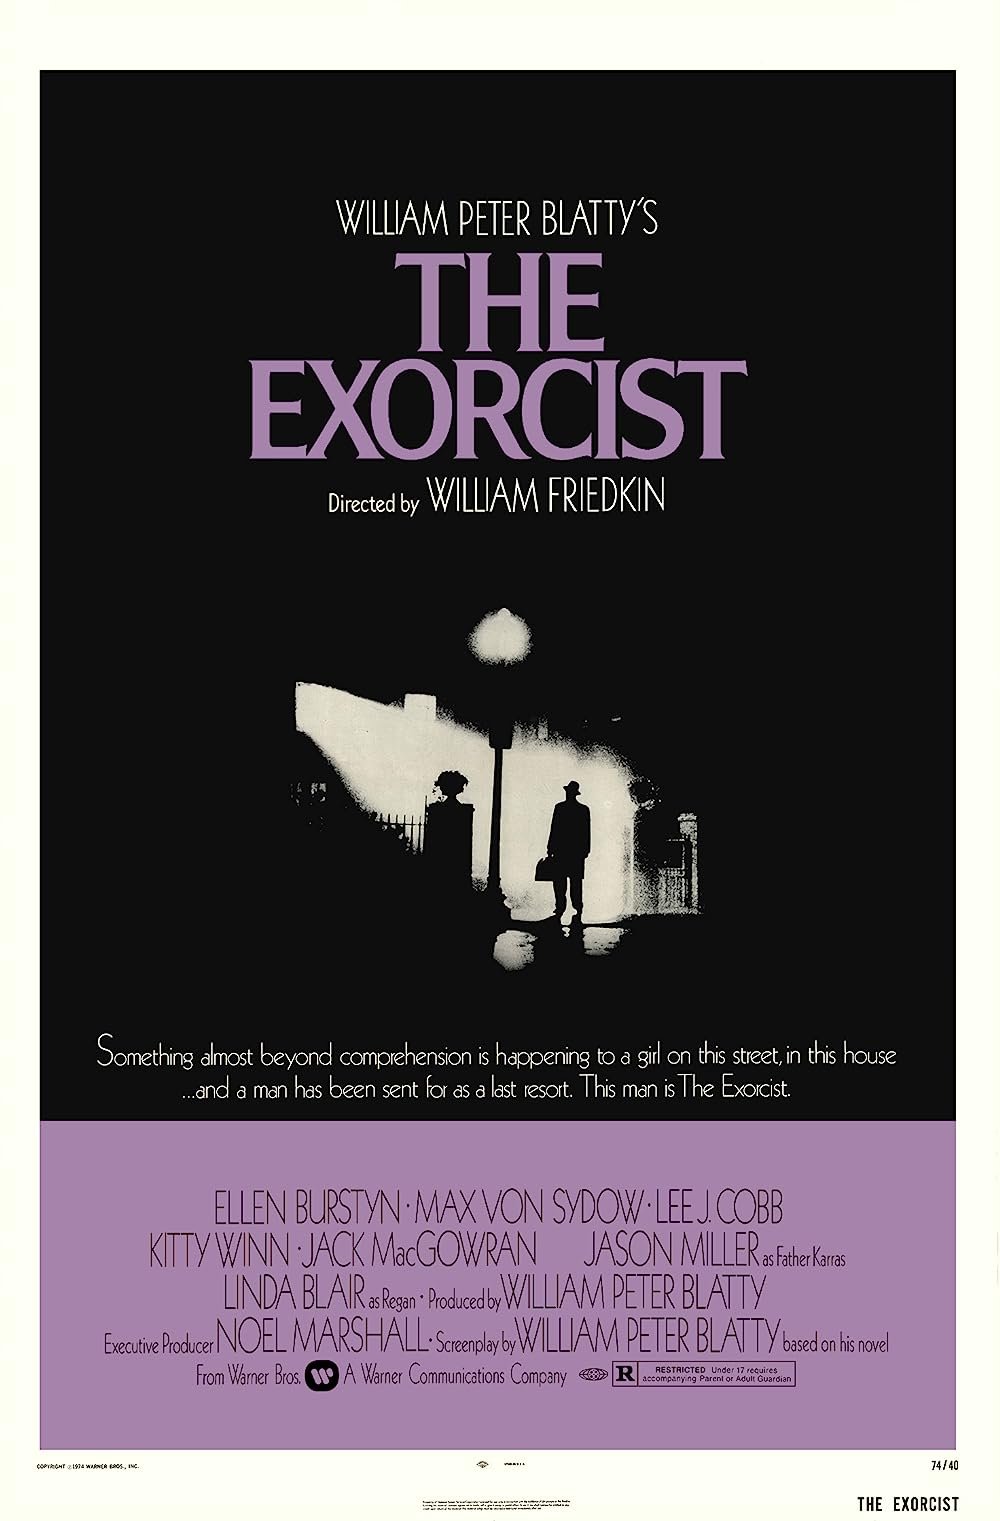 7) The Exorcist (1973) - IMDb: 8.0